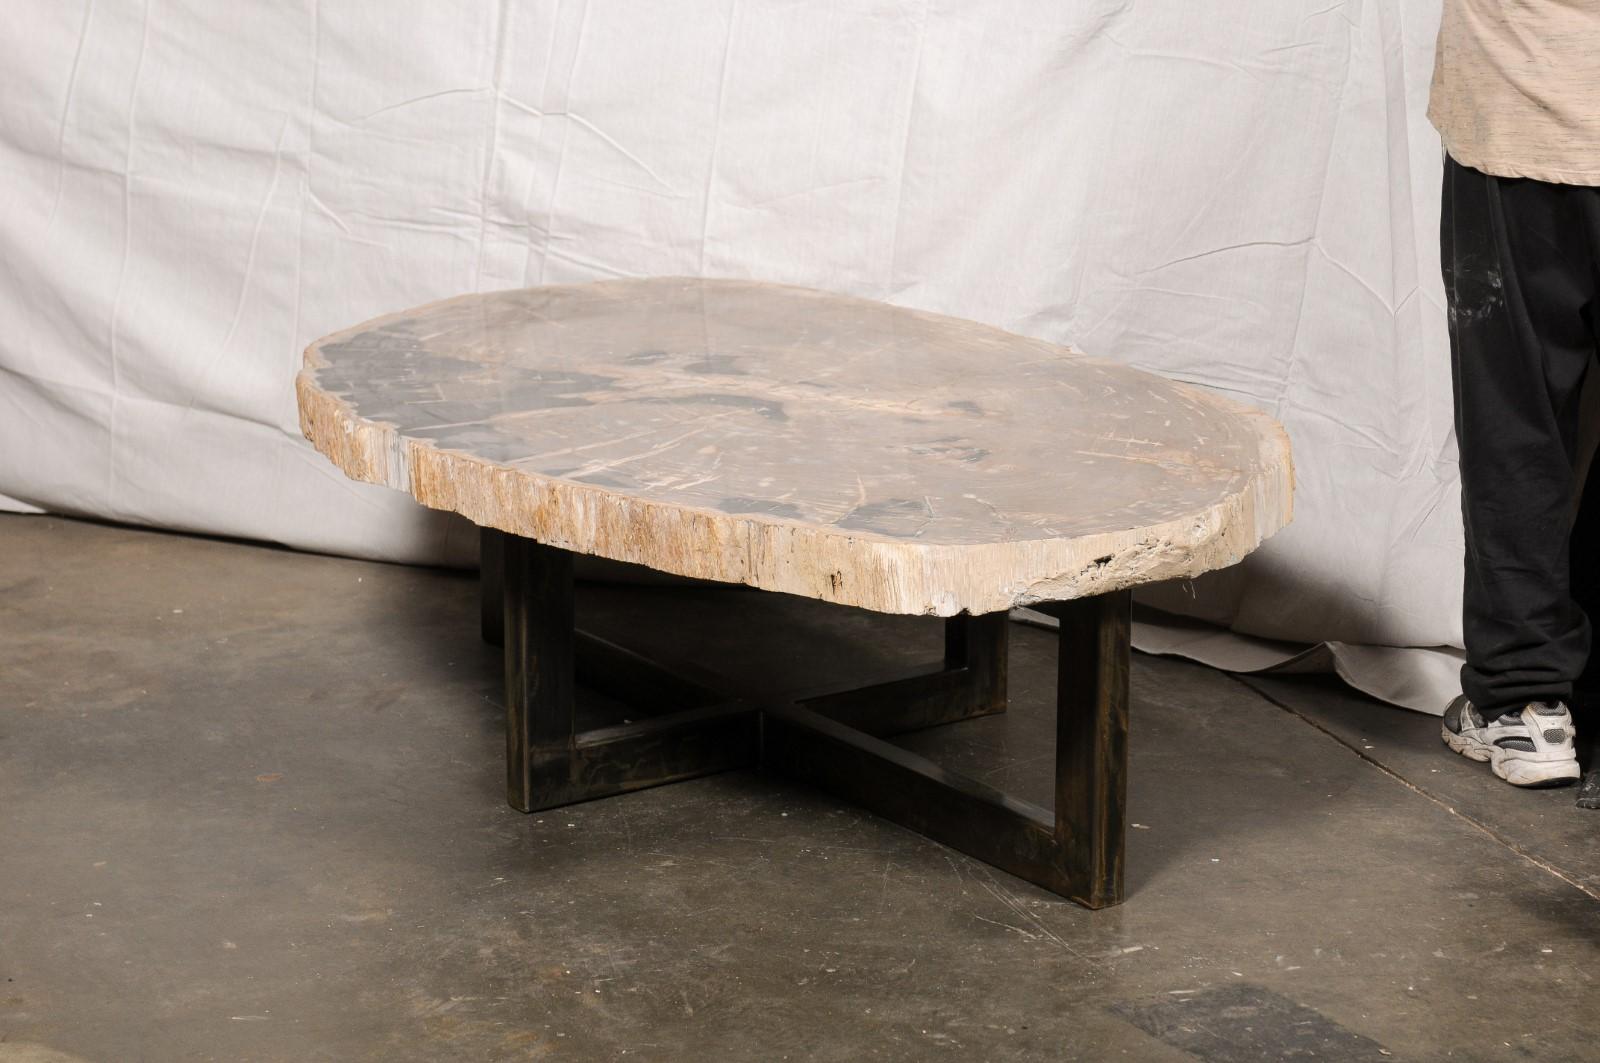 Une impressionnante table basse en bois pétrifié avec une base en fer. Cette table basse personnalisée a été façonnée à partir d'un bois pétrifié unique de grande taille et de forme essentiellement ovale, qui a été poli en douceur et a conservé son